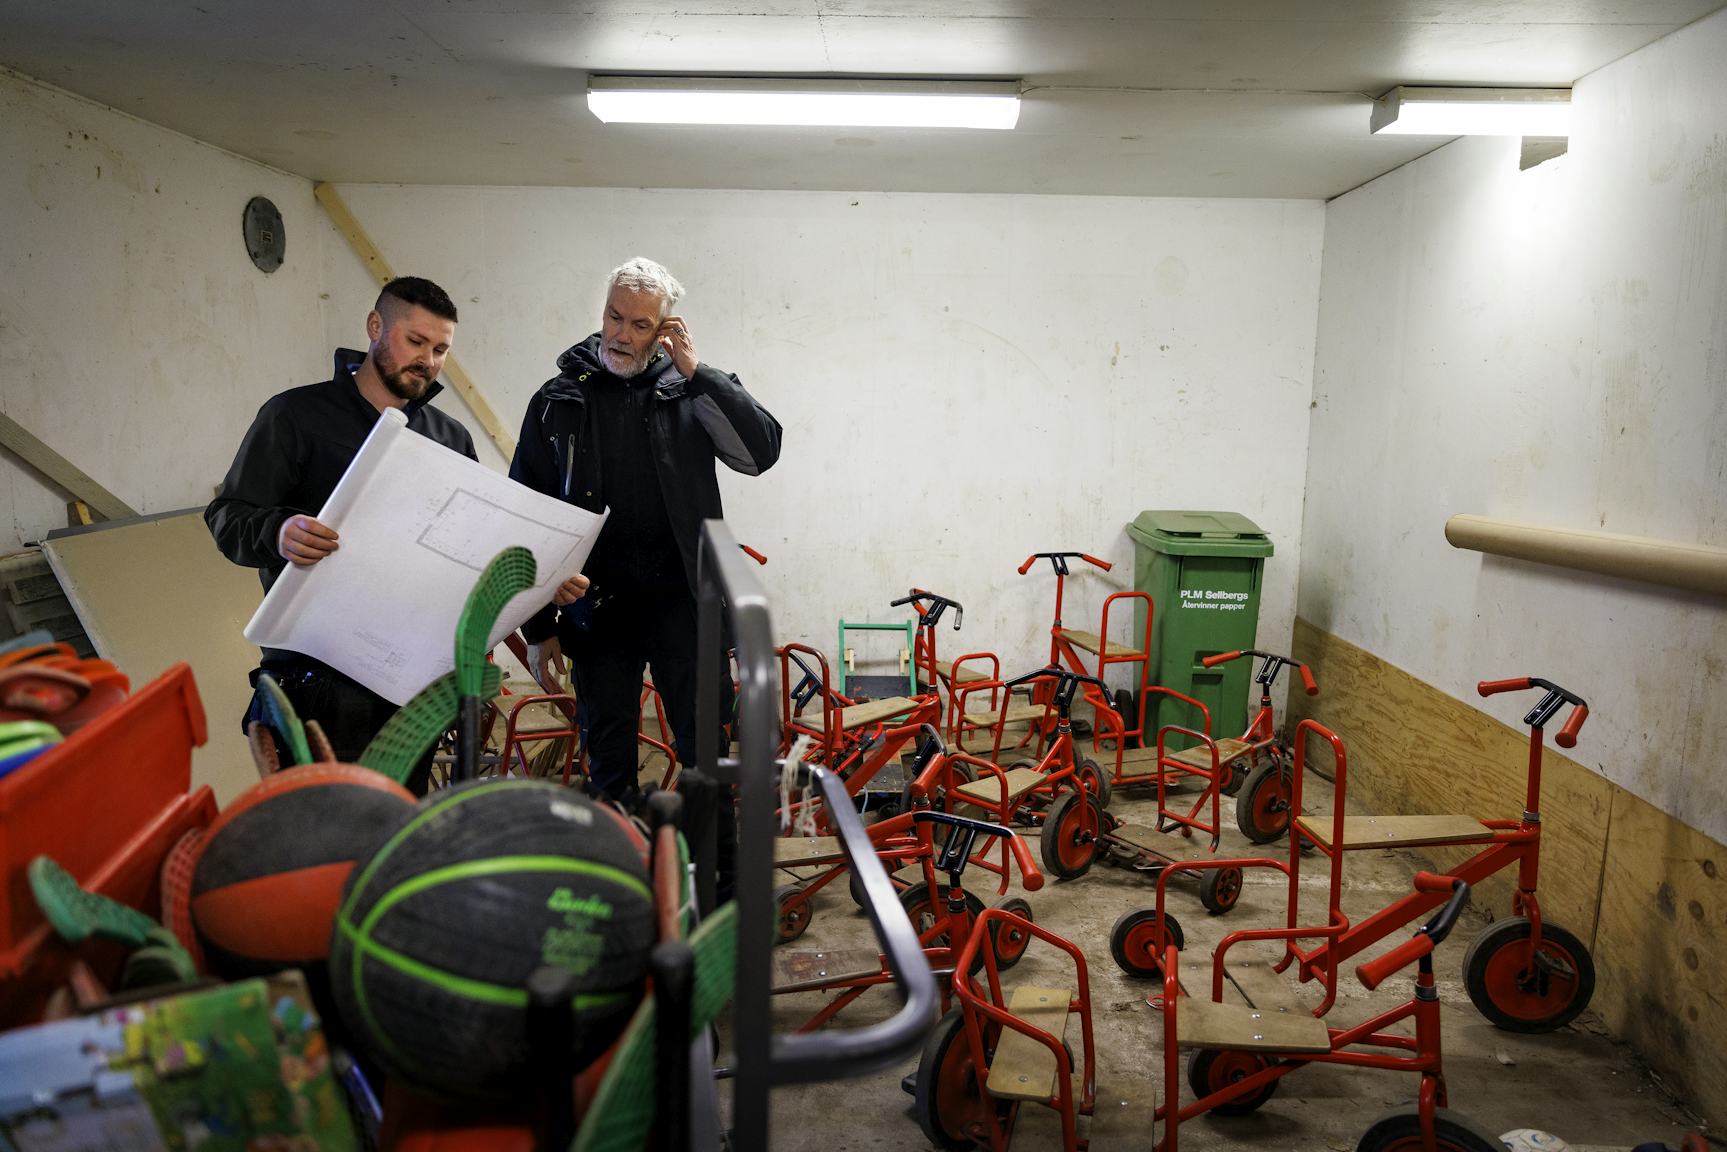 Johan Söderberg och Rickard Jönsson studerar en ritning i ett stökigt skyddsrum med utspridda trehjulingar.